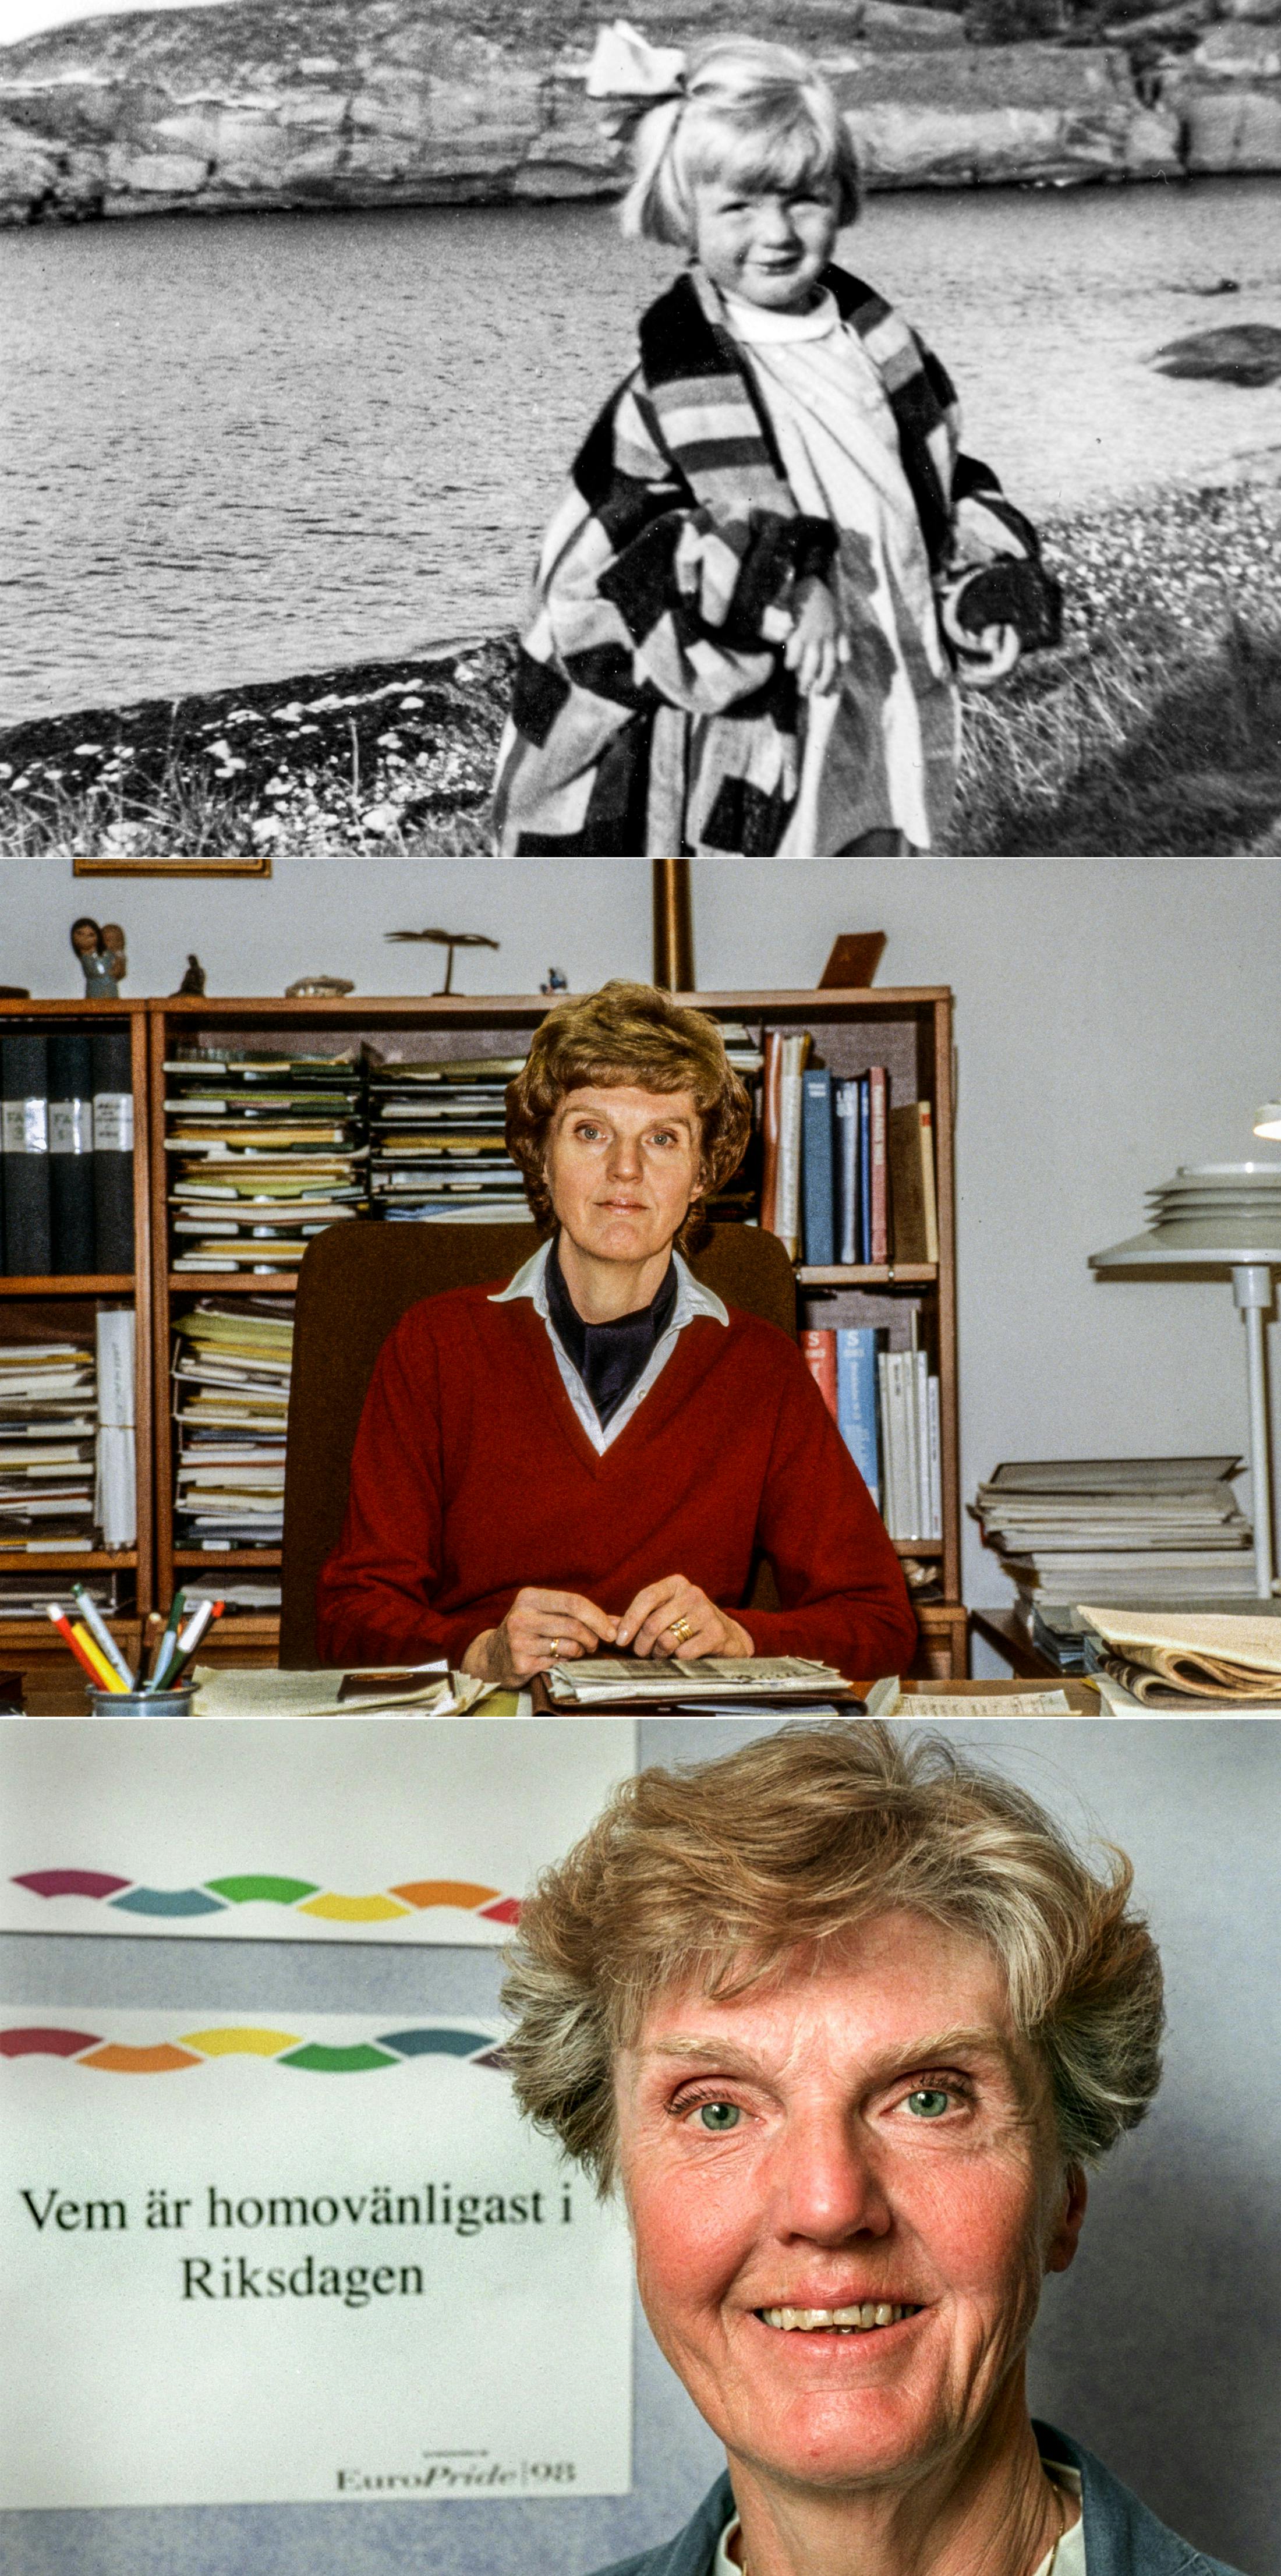 Tre bilder på Barbro Westerholm: Landsort, 1936 / Socialstyrelsen, 1984 / "Homovänligast i riksdagen", 1998.